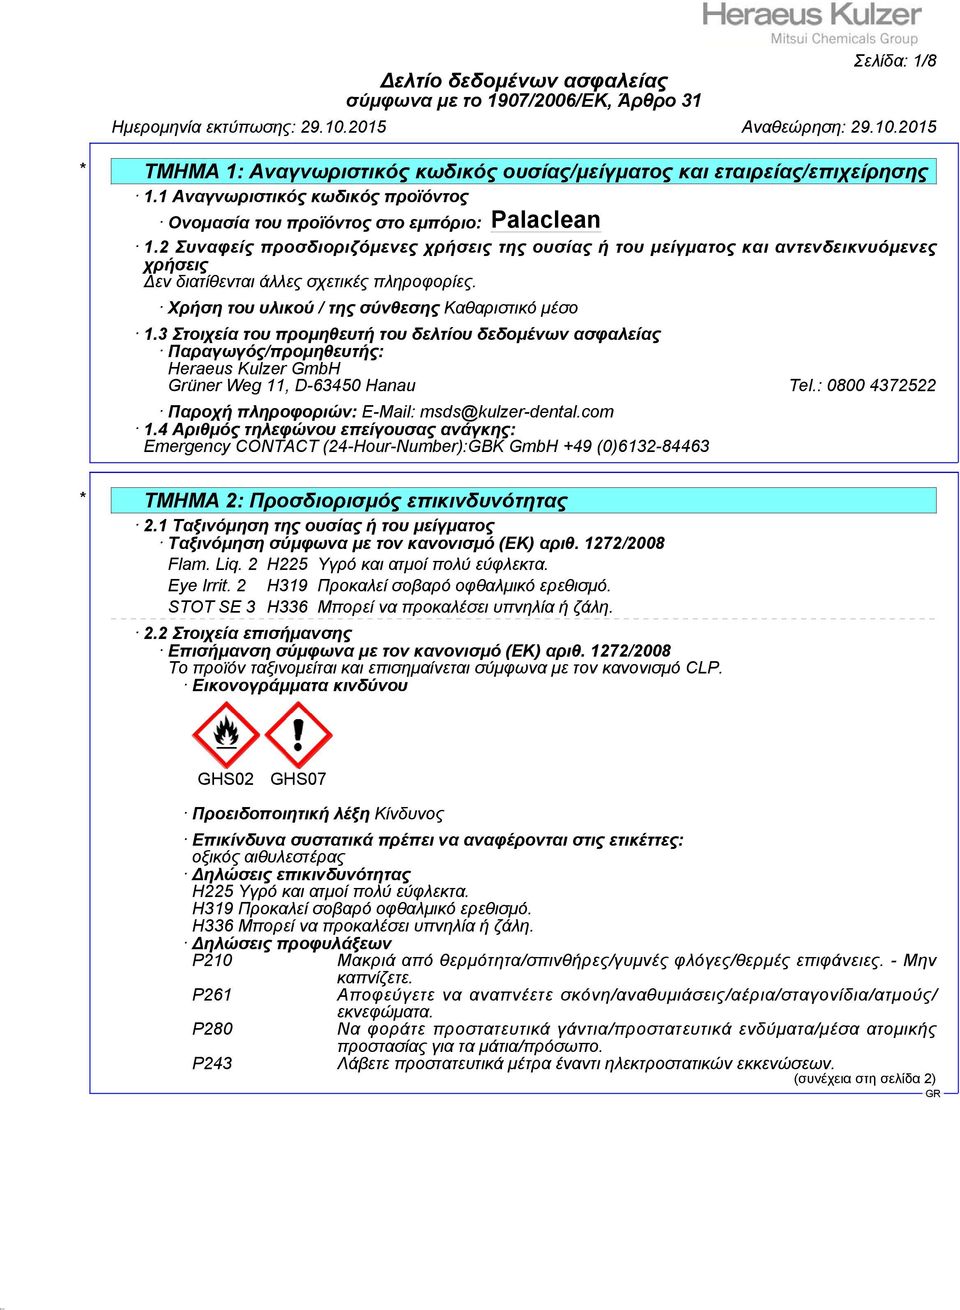 3 Στοιχεία του προμηθευτή του δελτίου δεδομένων ασφαλείας Παραγωγός/προμηθευτής: Heraeus Kulzer GmbH Grüner Weg 11, D-63450 Hanau Tel.: 0800 4372522 Παροχή πληροφοριών: E-Mail: msds@kulzer-dental.